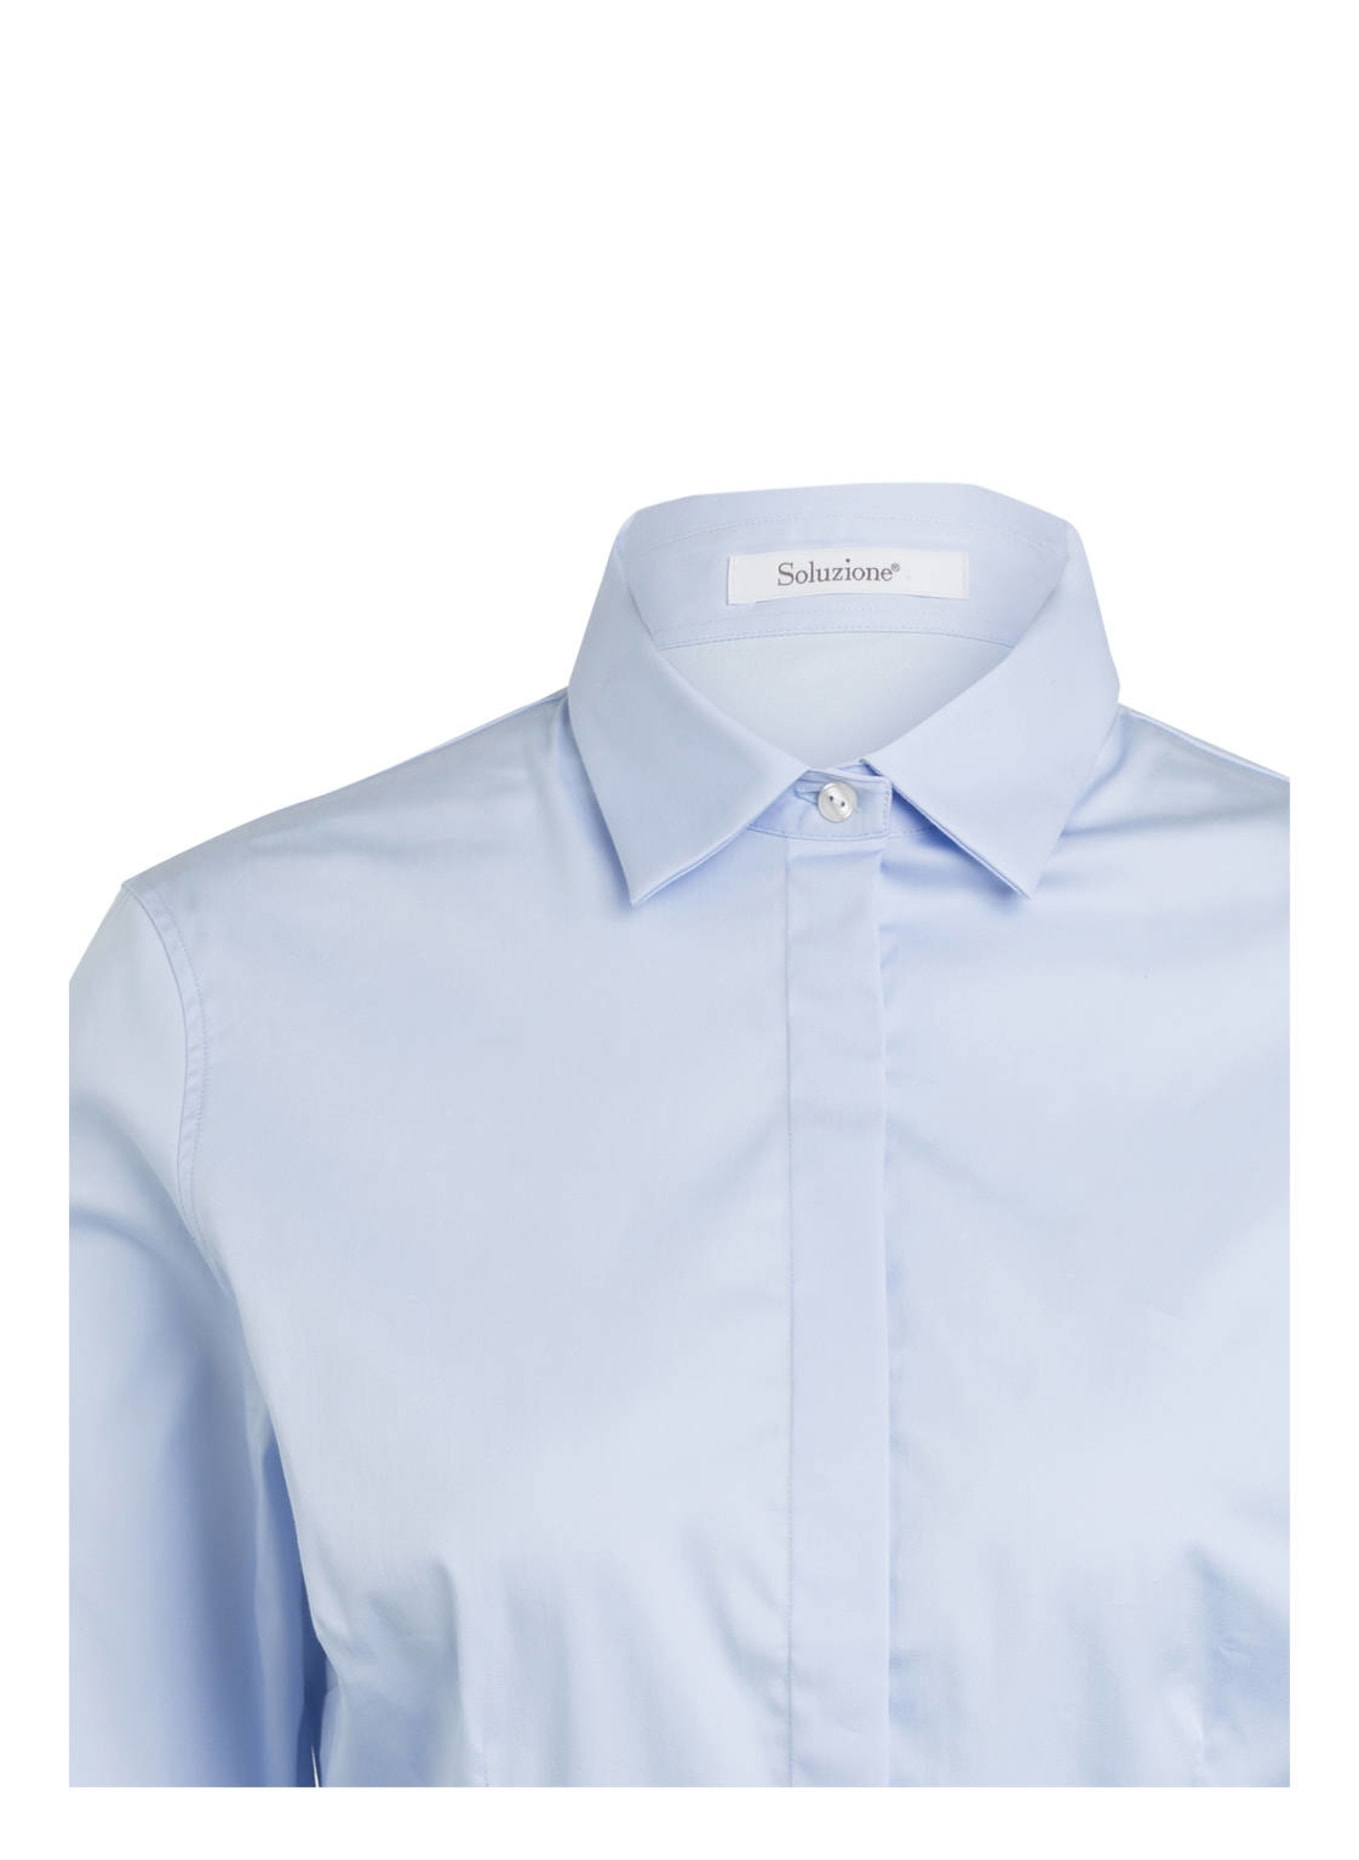 Soluzione Shirt blouse, Color: LIGHT BLUE (Image 3)